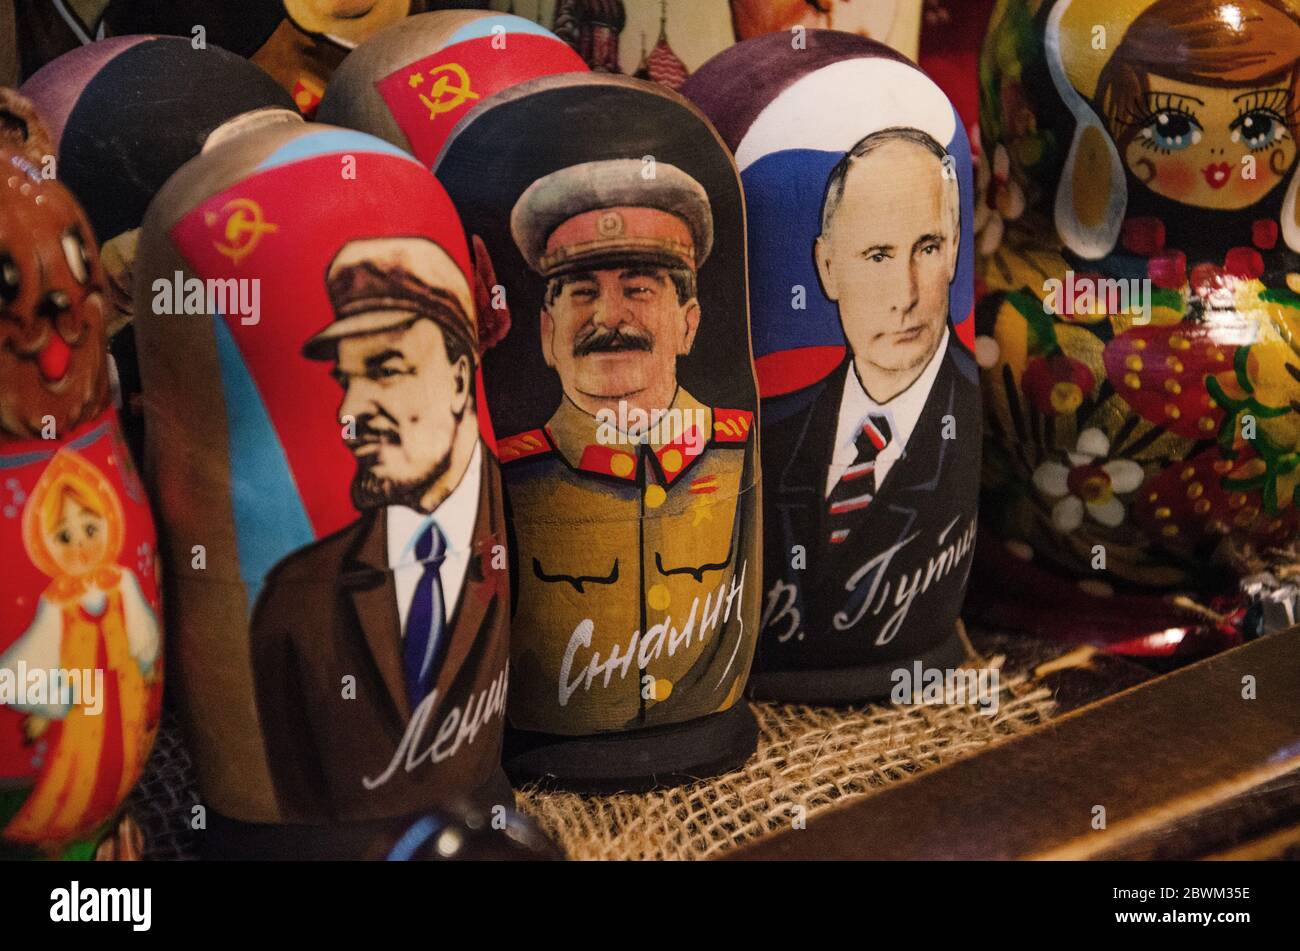 MOSKAU, RUSSLAND - 27. Juli 2019: Russische traditionelle Nesting-Puppen. Puppen haben ein Porträt der politischen Führer Wladimir Lenin, Wladimir Putin und Joseph Stockfoto